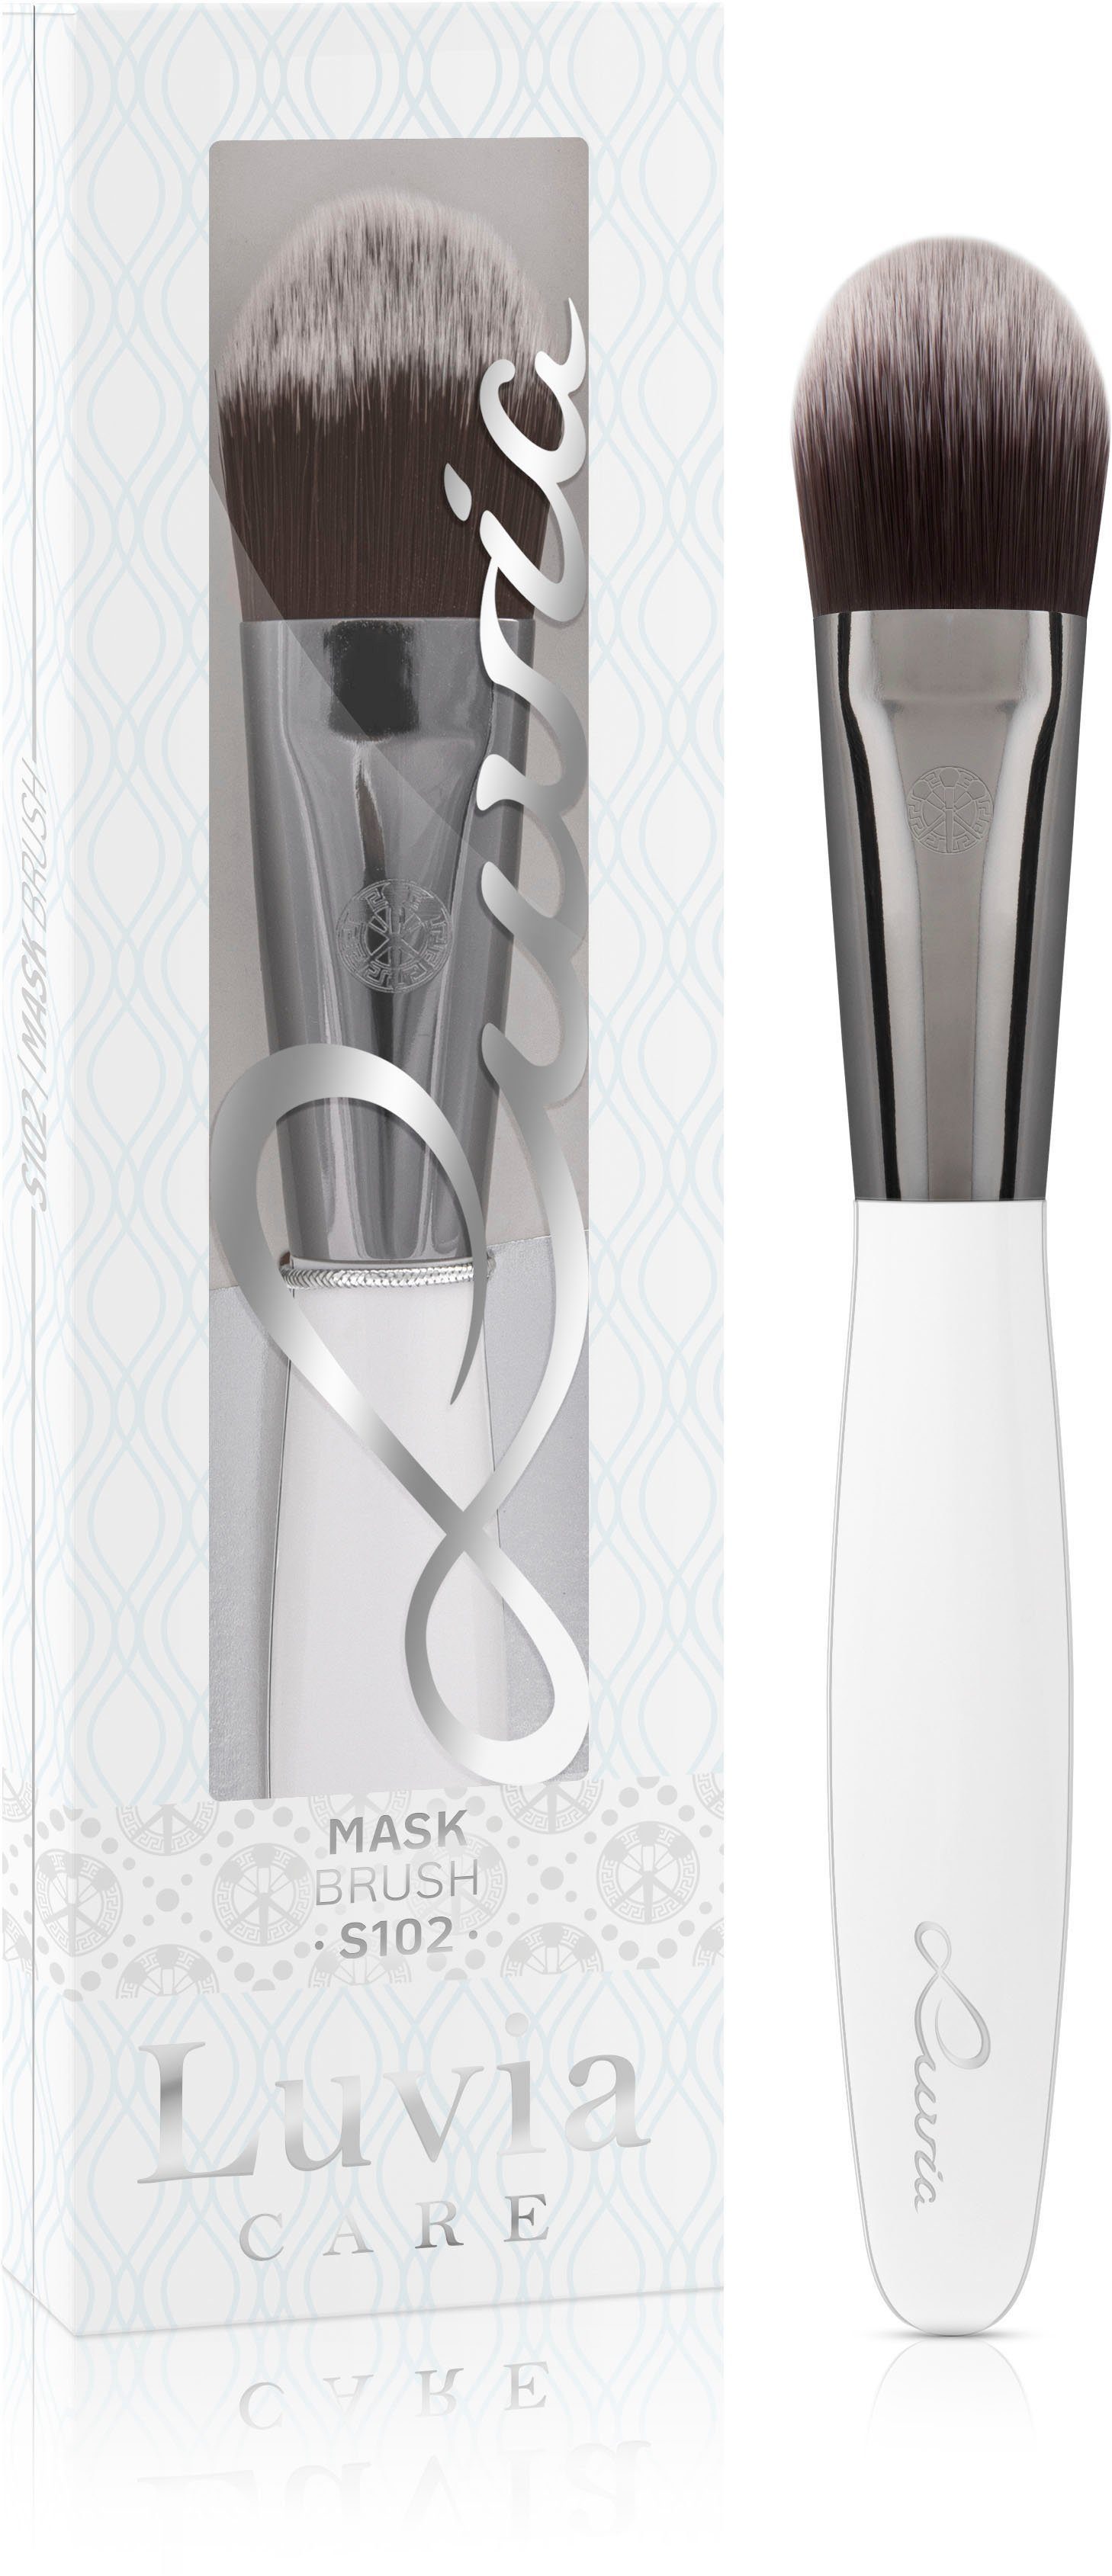 Luvia Brush Mask Cosmetics Maskenpinsel